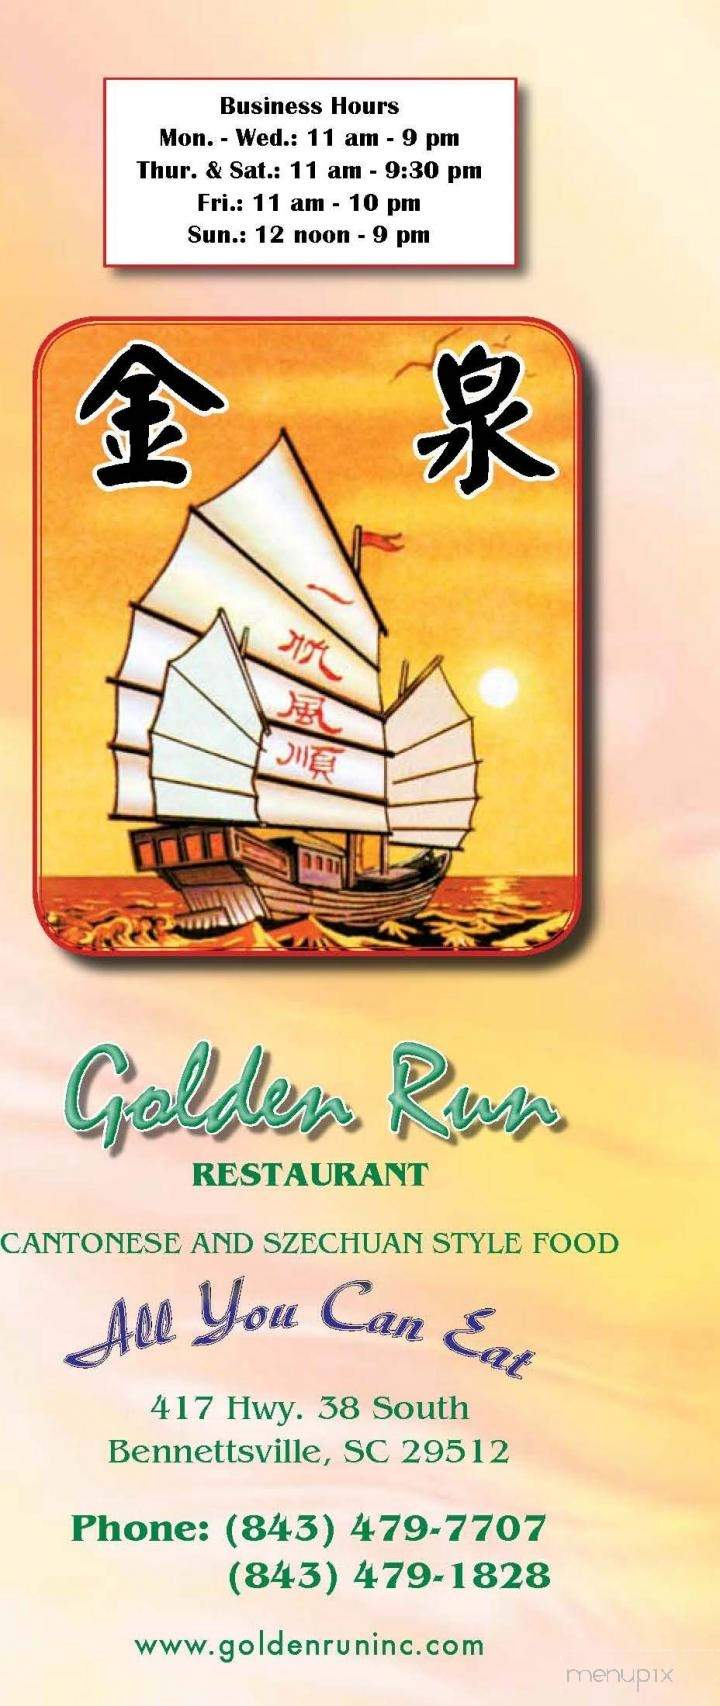 Golden Run Restaurant - Laurinburg, NC